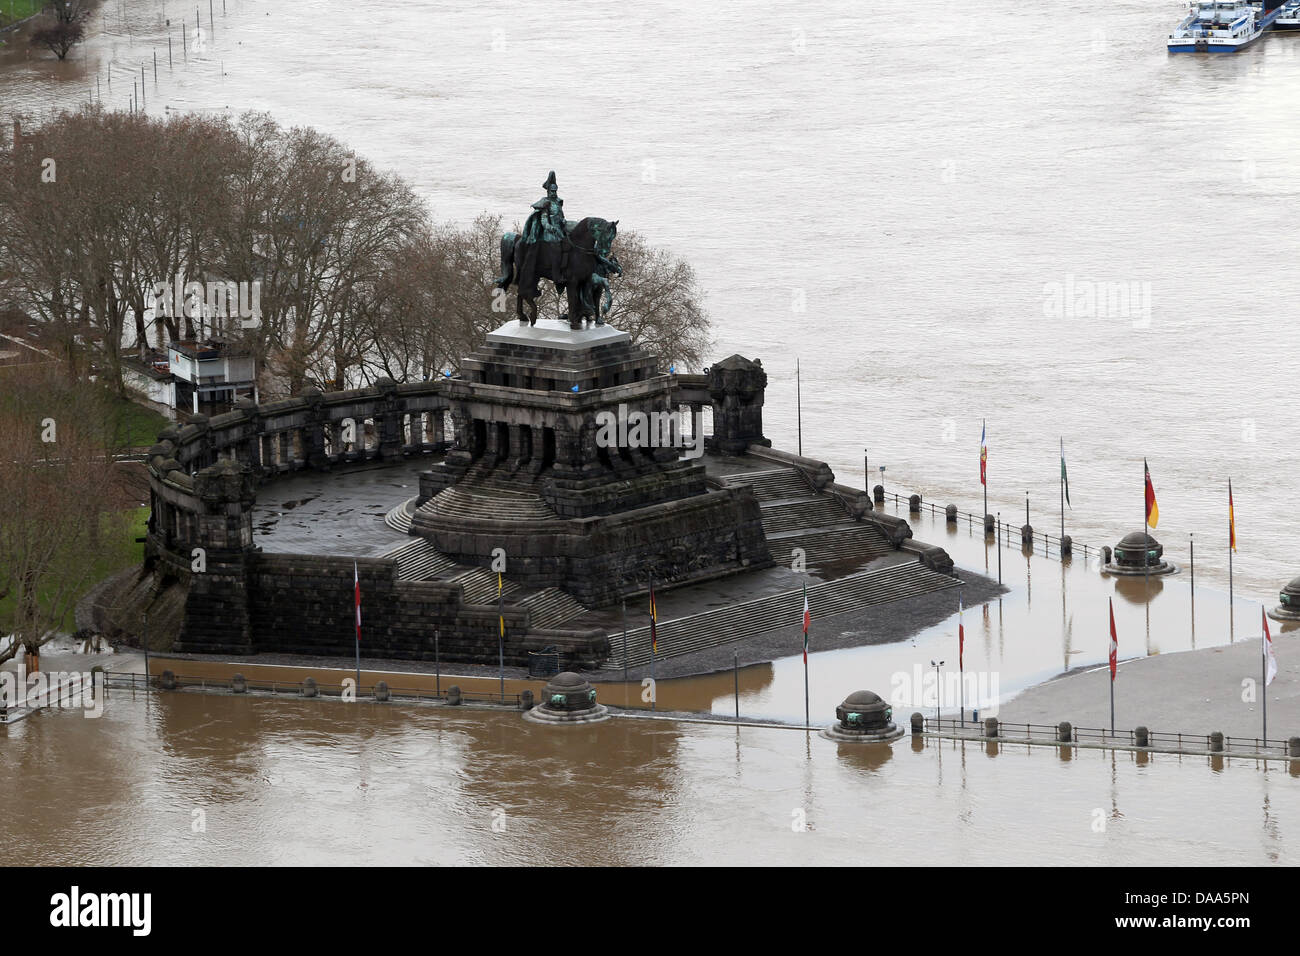 Die Statue von Kaiser Wilhelm auf dem Deutschen Eck wird in Koblenz, Deutschland, 9. Januar 2011 geflutet. Schneeschmelze und starken Regenfällen führten zu hohen Wasserstände in den Rhein und Mosel Flüsse. Foto: THOMAS FREY Stockfoto